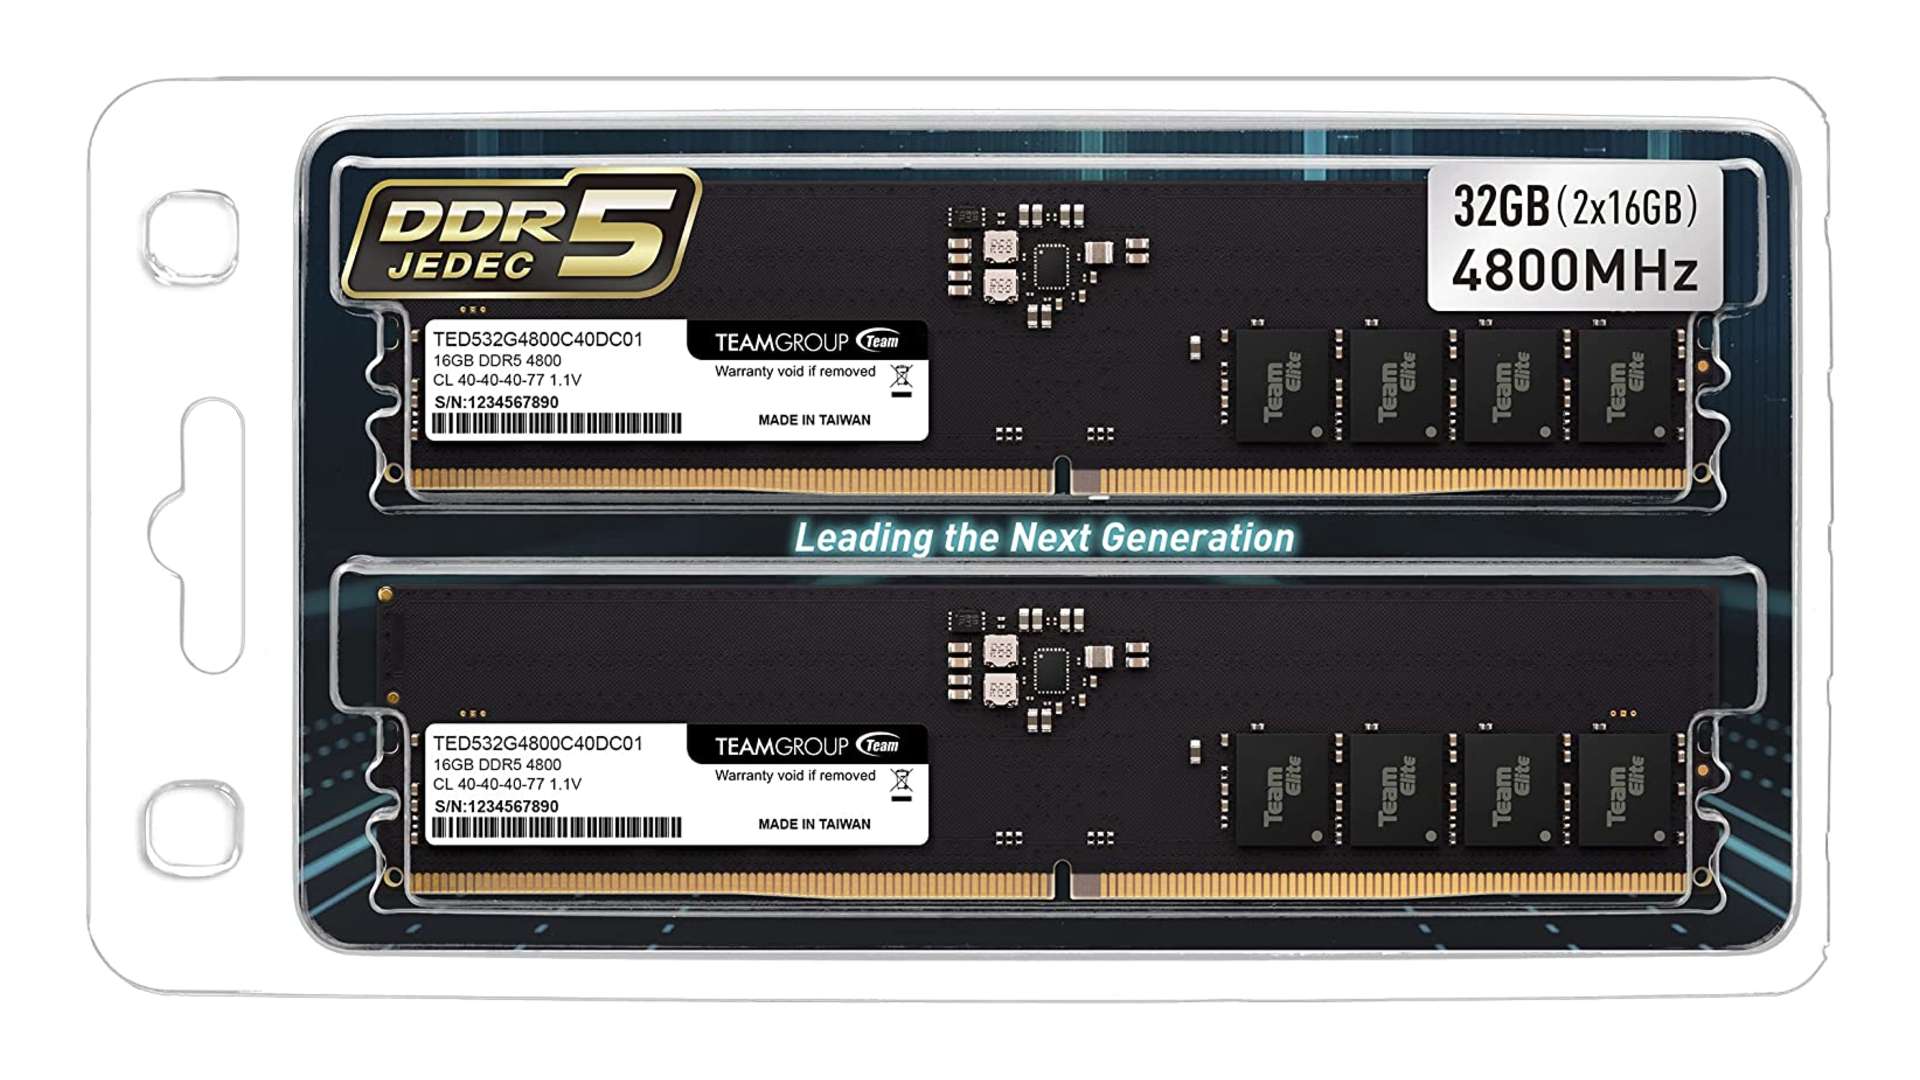 Amazon koma yekem a DDR5 RAM-ê ya ku pê dayikê tune ye ku pê vebike navnîş dike